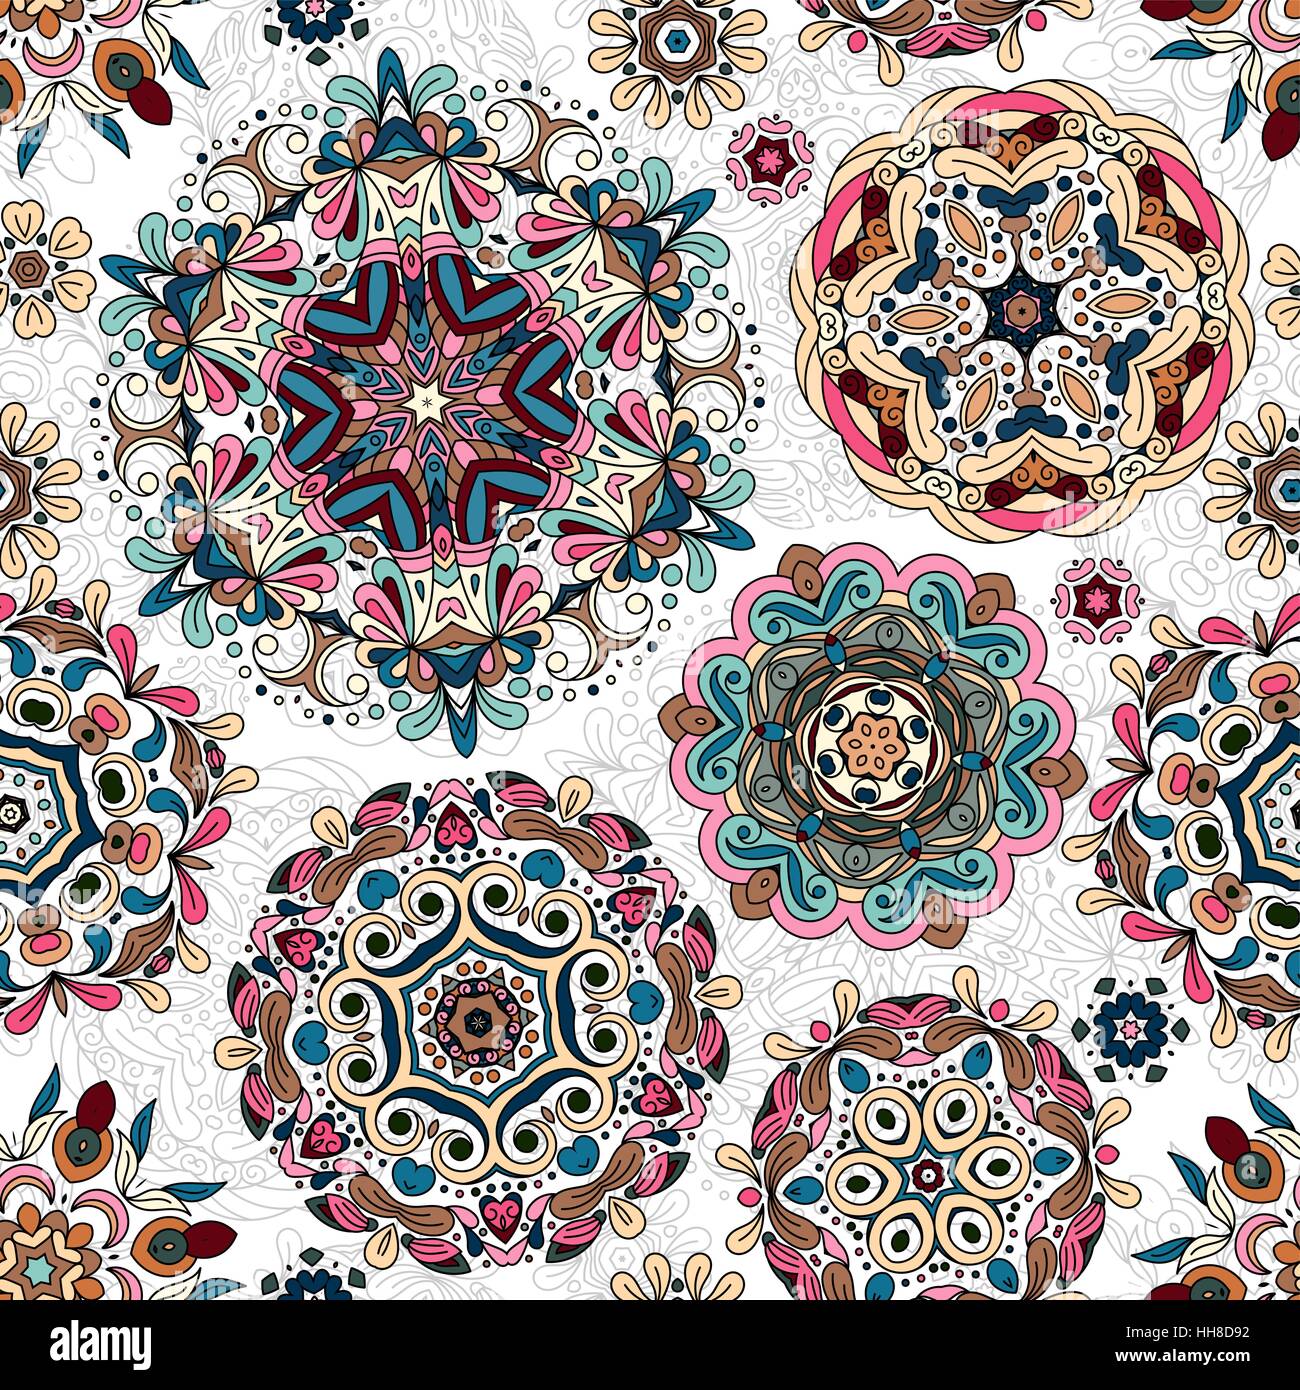 Motif ethnique dans des tons pastels de fleurs stylisées, des feuilles et des formes circulaires avec le turc, l'Ouzbek, Kazakh vectoriel continu motifs de la texture pour imprimer, printemps été fashion, papier peint, tissu, textile Illustration de Vecteur